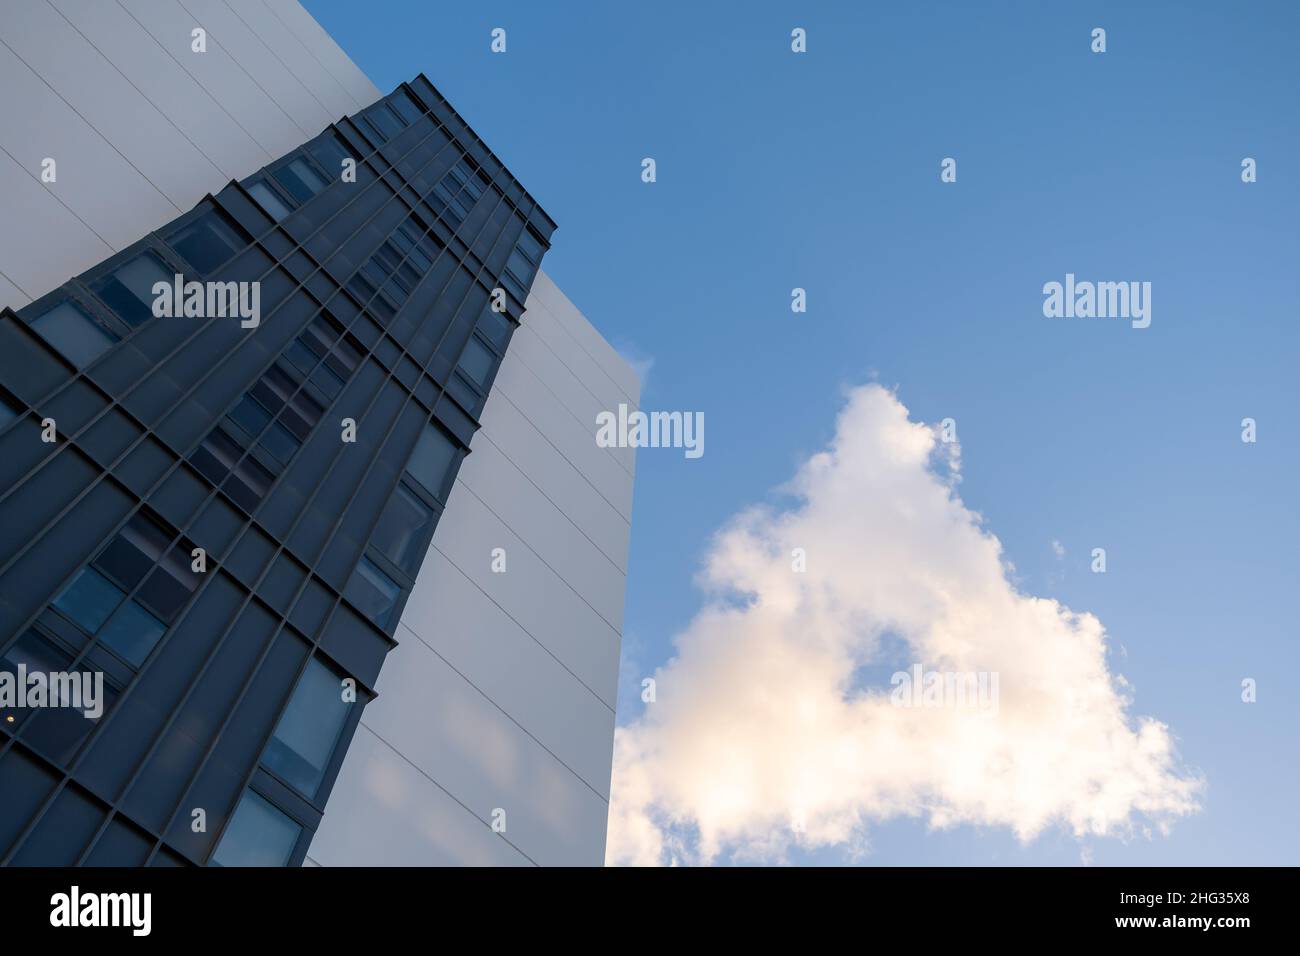 Mirando hacia arriba al edificio residencial y a la rara cloiud en una forma de triángulo con cielo azul y espacio de copia Foto de stock